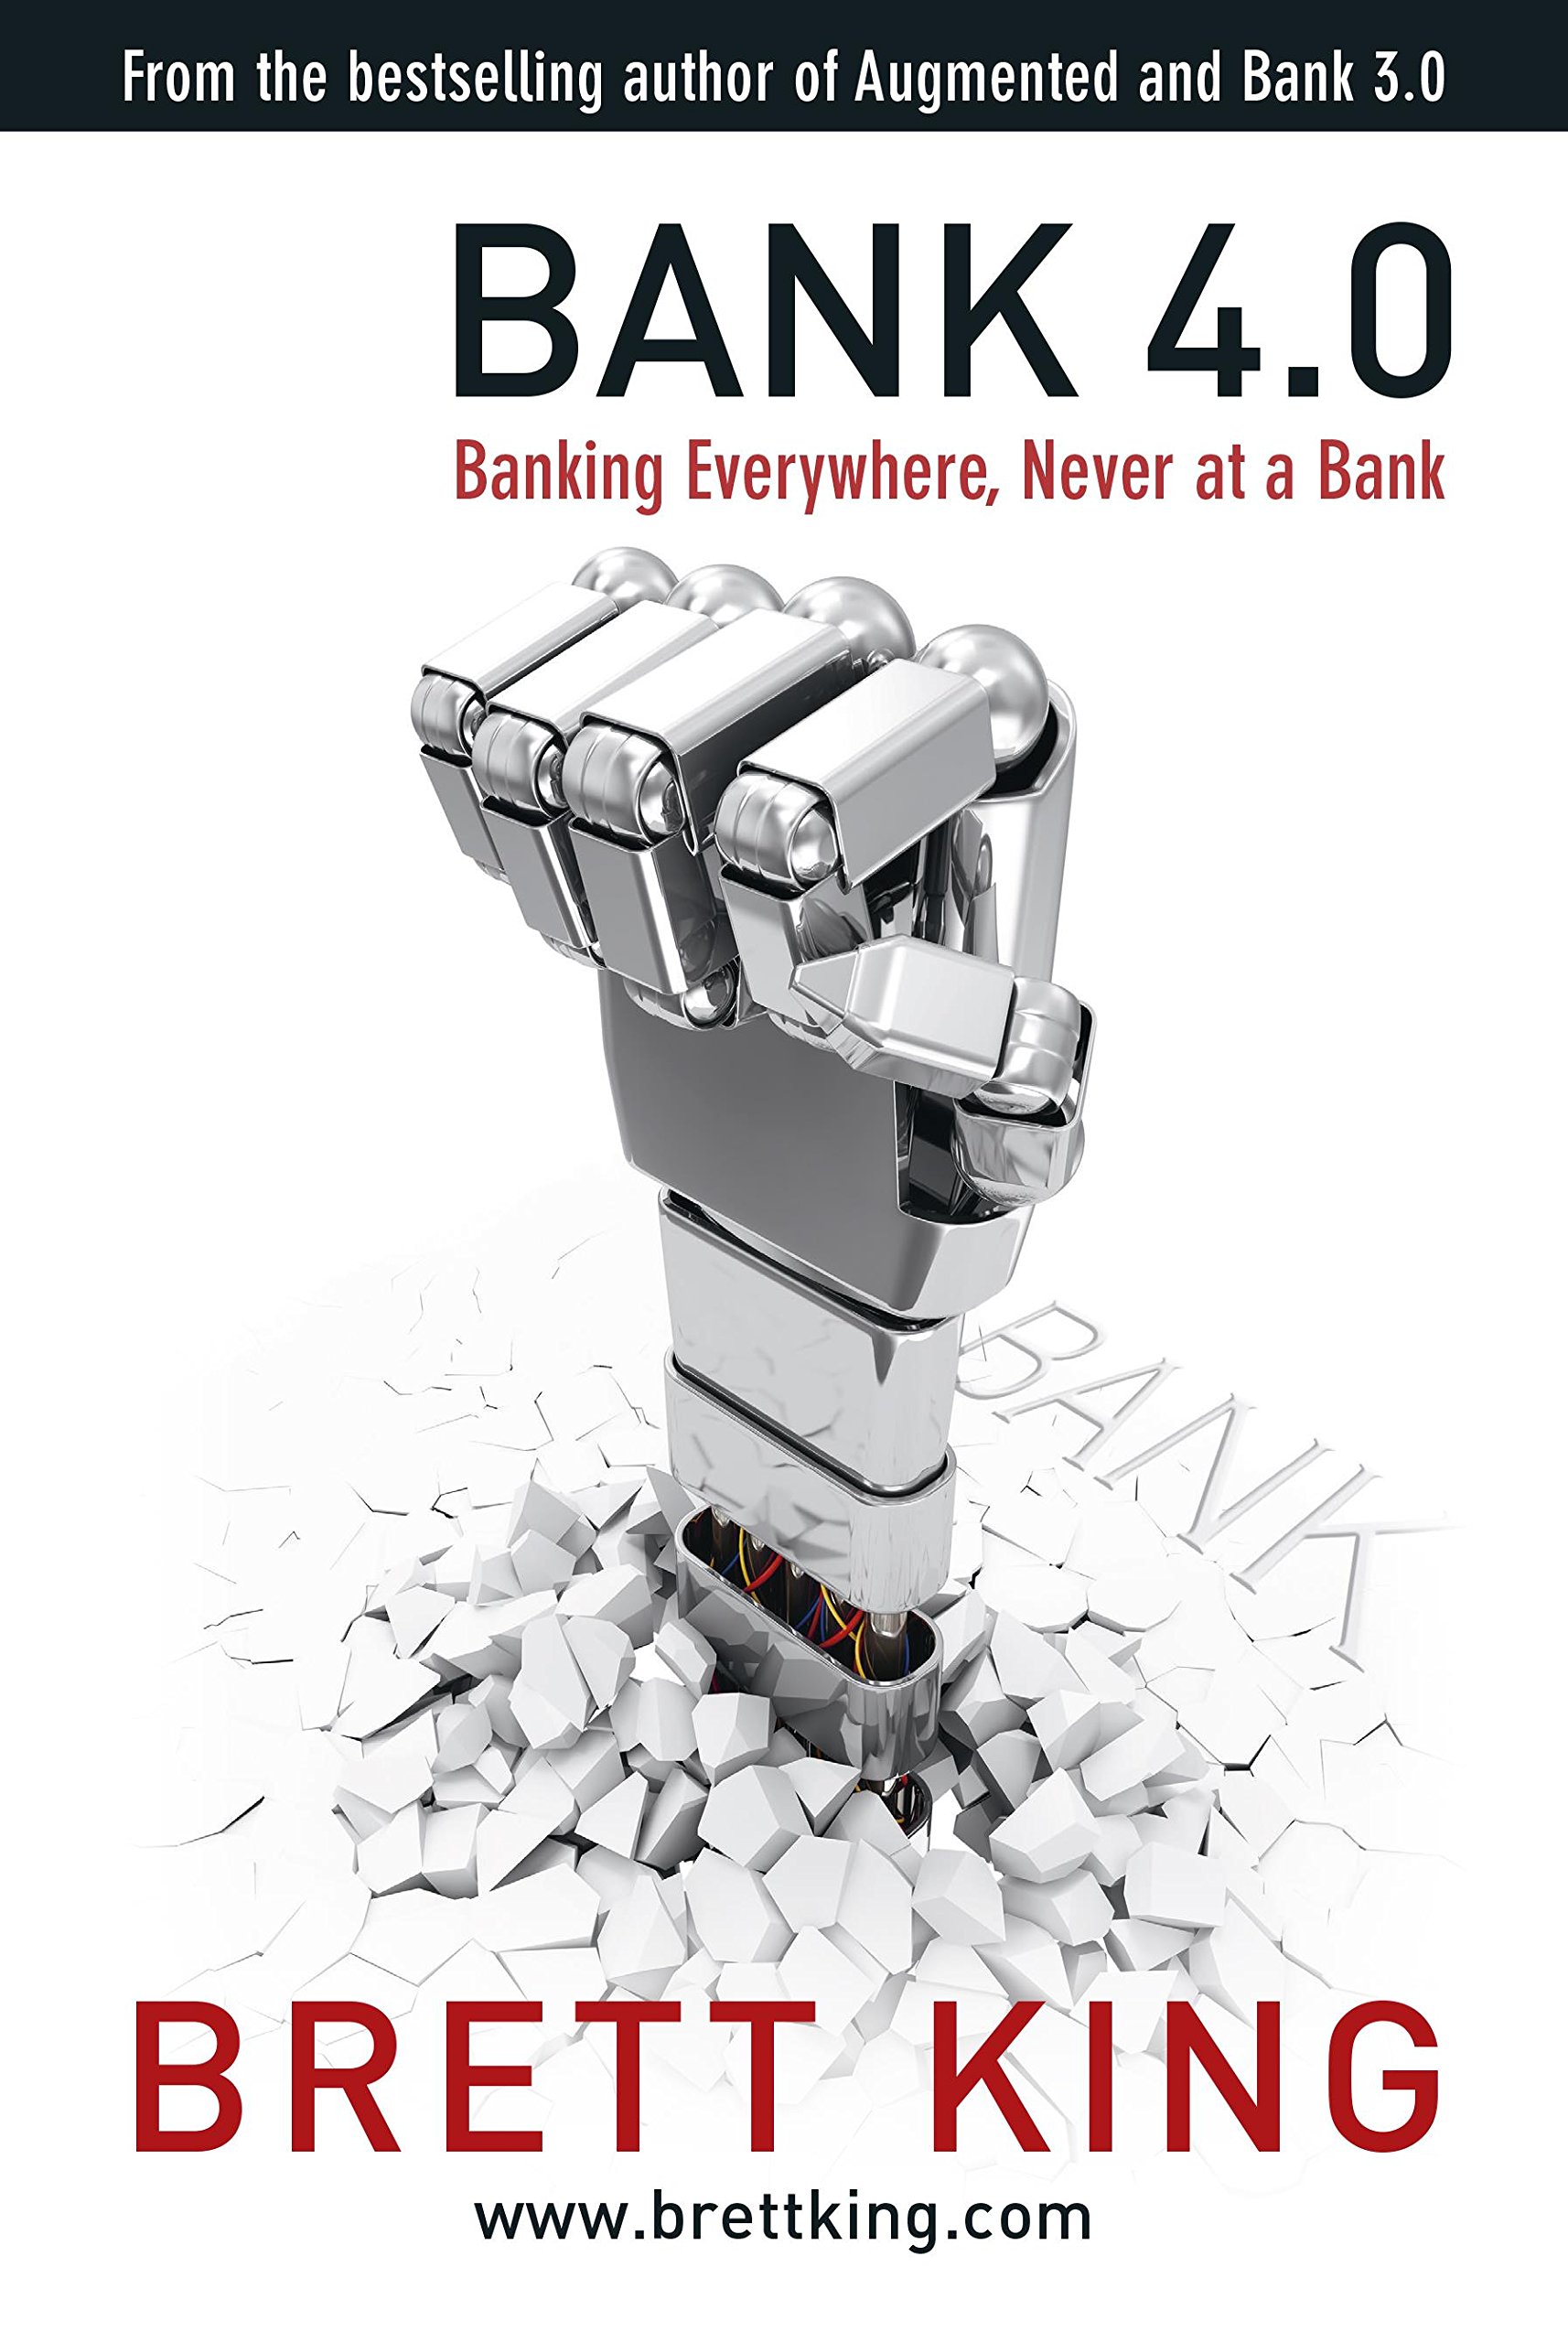 Bank 4.0 by Brett King